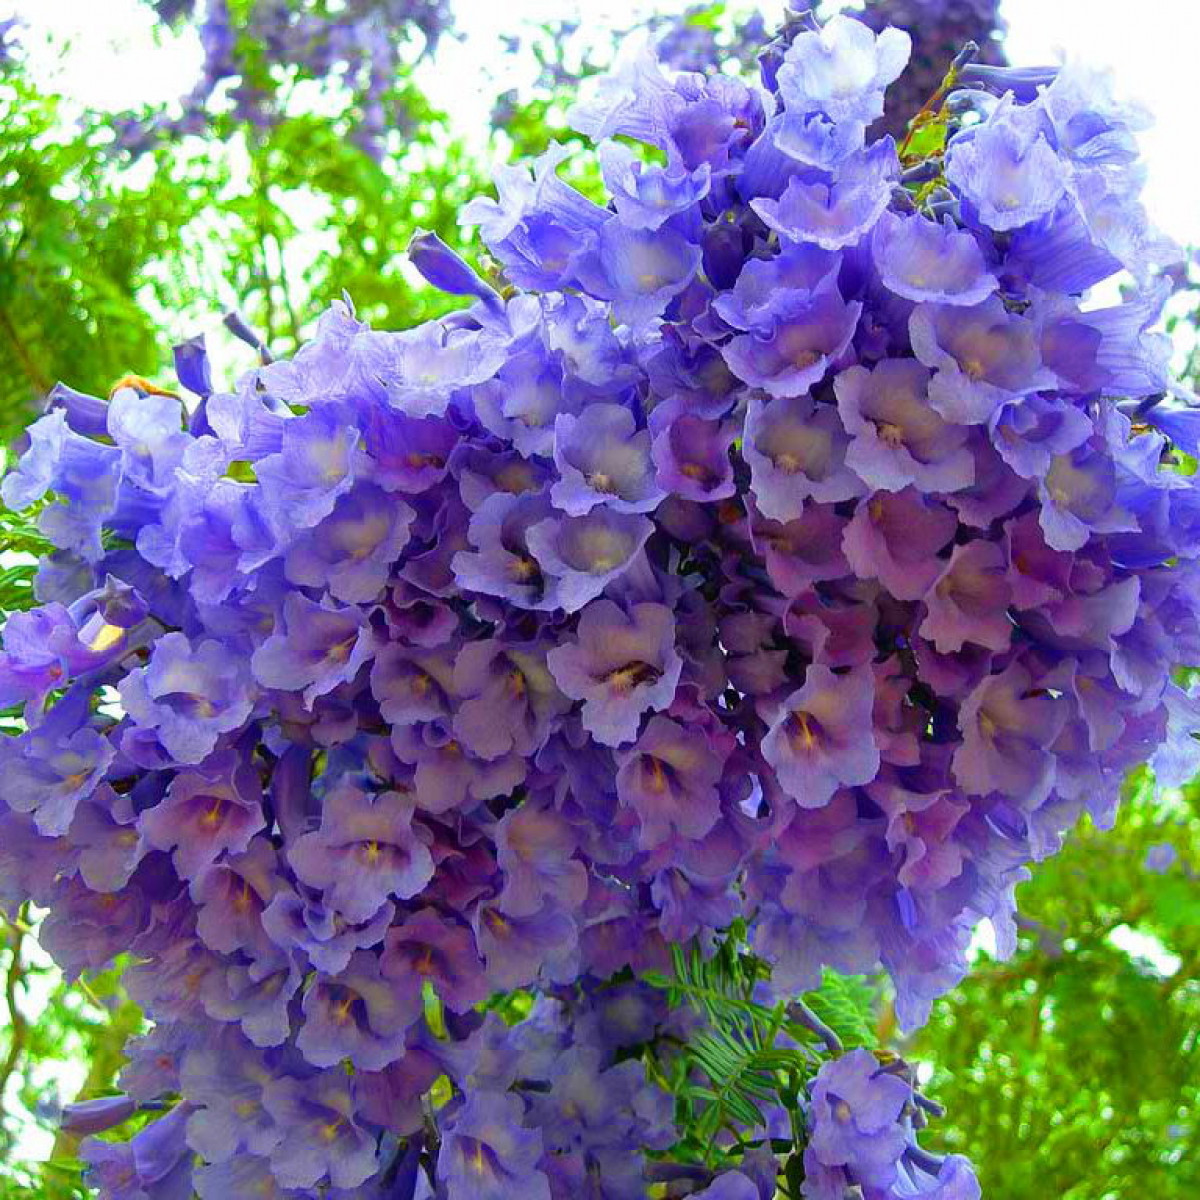 Palisandramedžio medžiai - gražus bet kurio sodo ar gatvės akcentas, išsiskiriantis ryškiais violetiniais ir mėlynais žiedais bei švelniais paparčio pavidalo lapais.